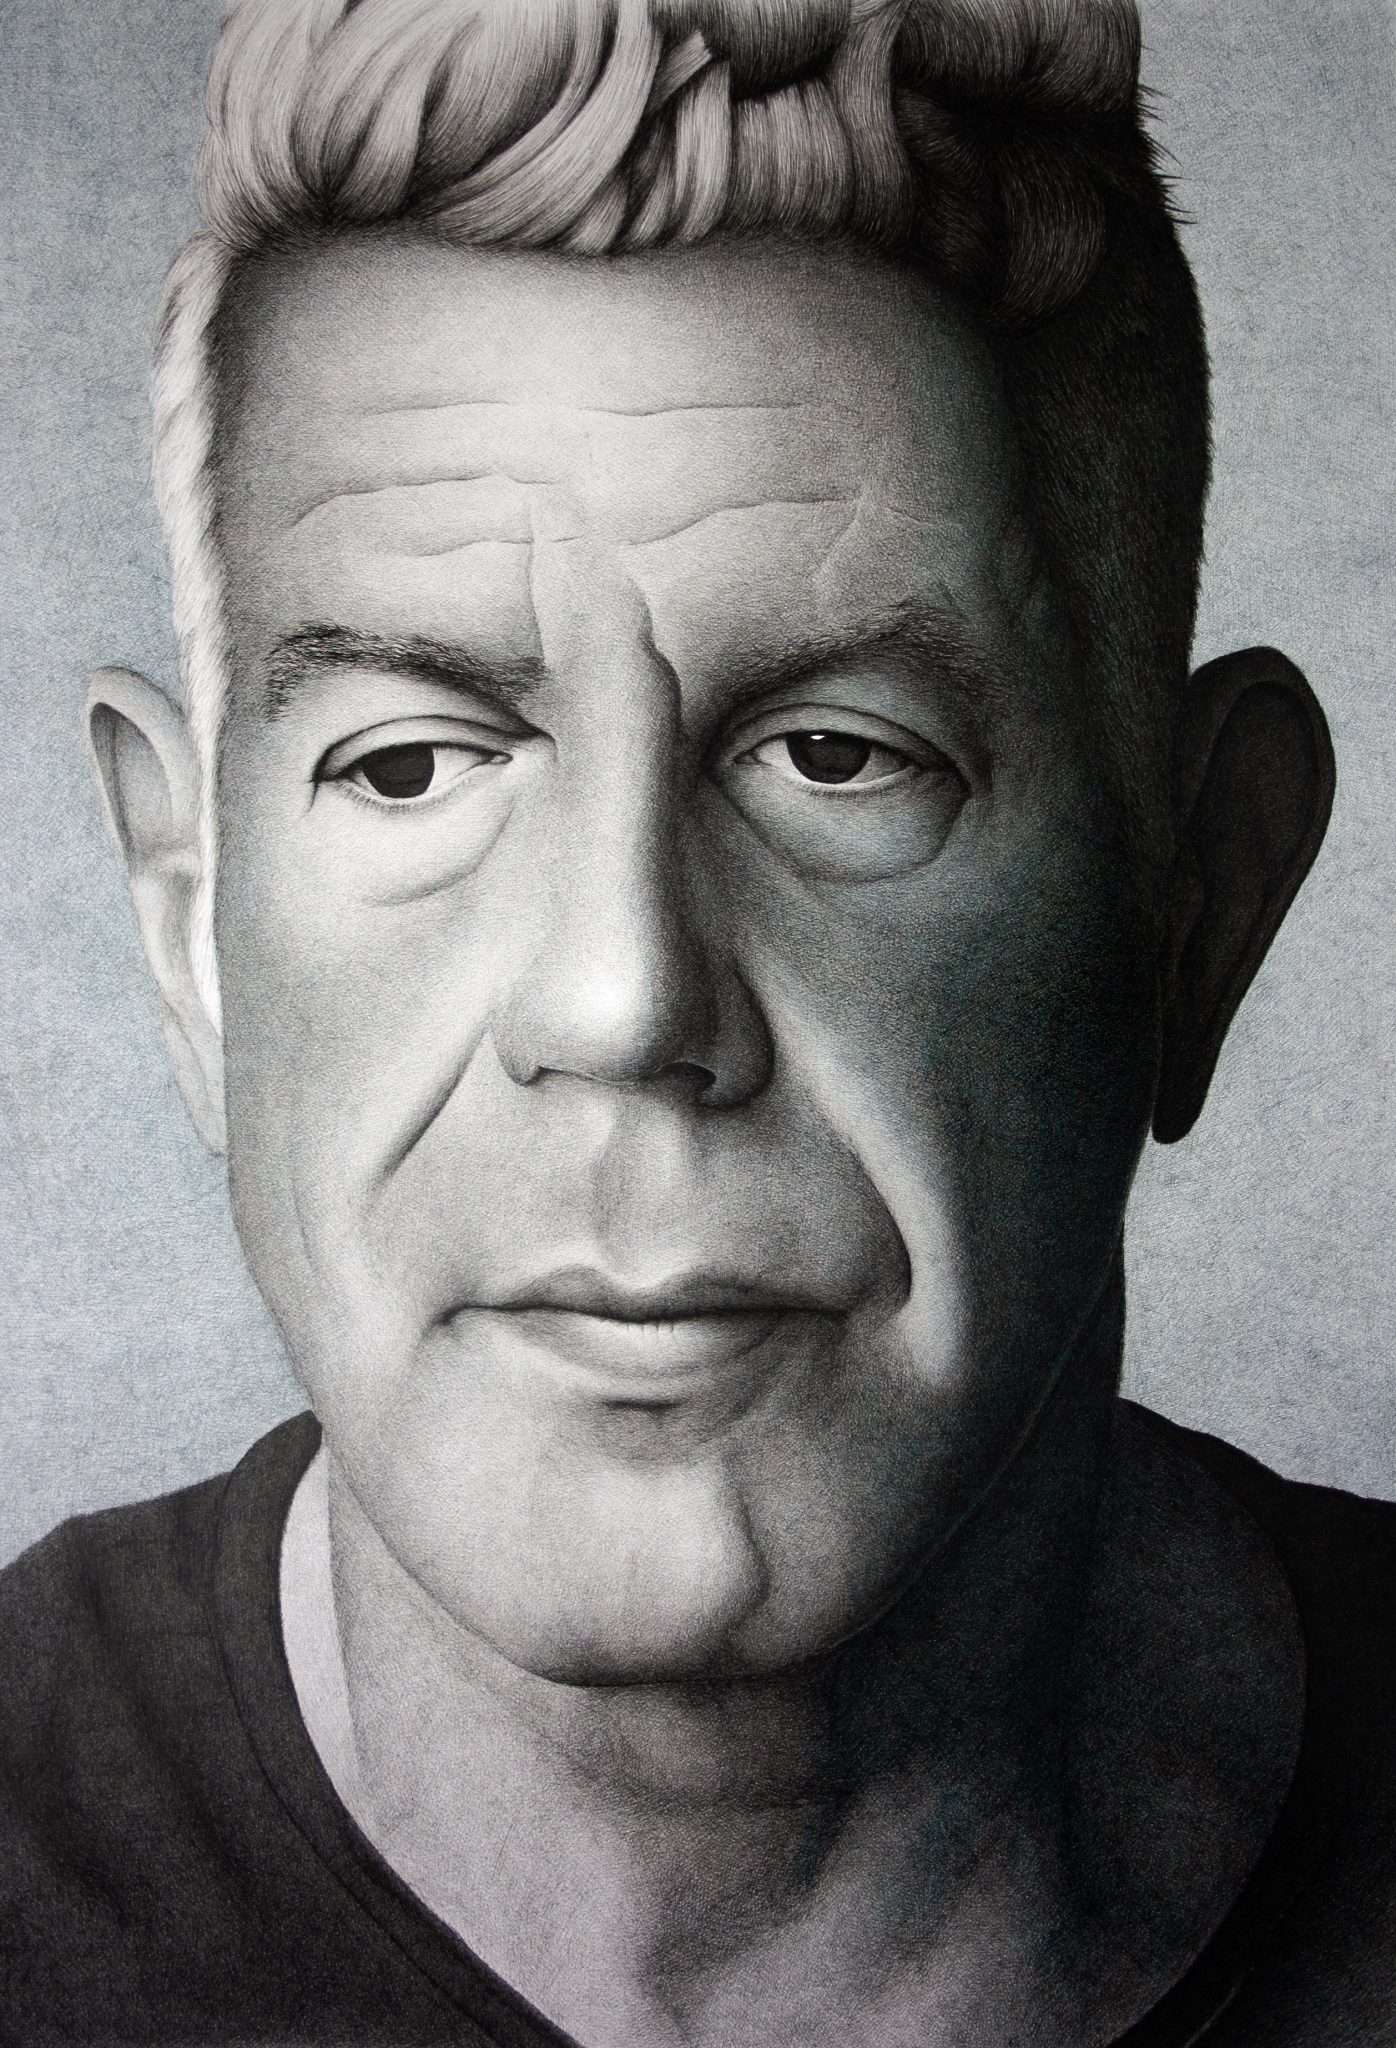 Anthony Bourdain portrait